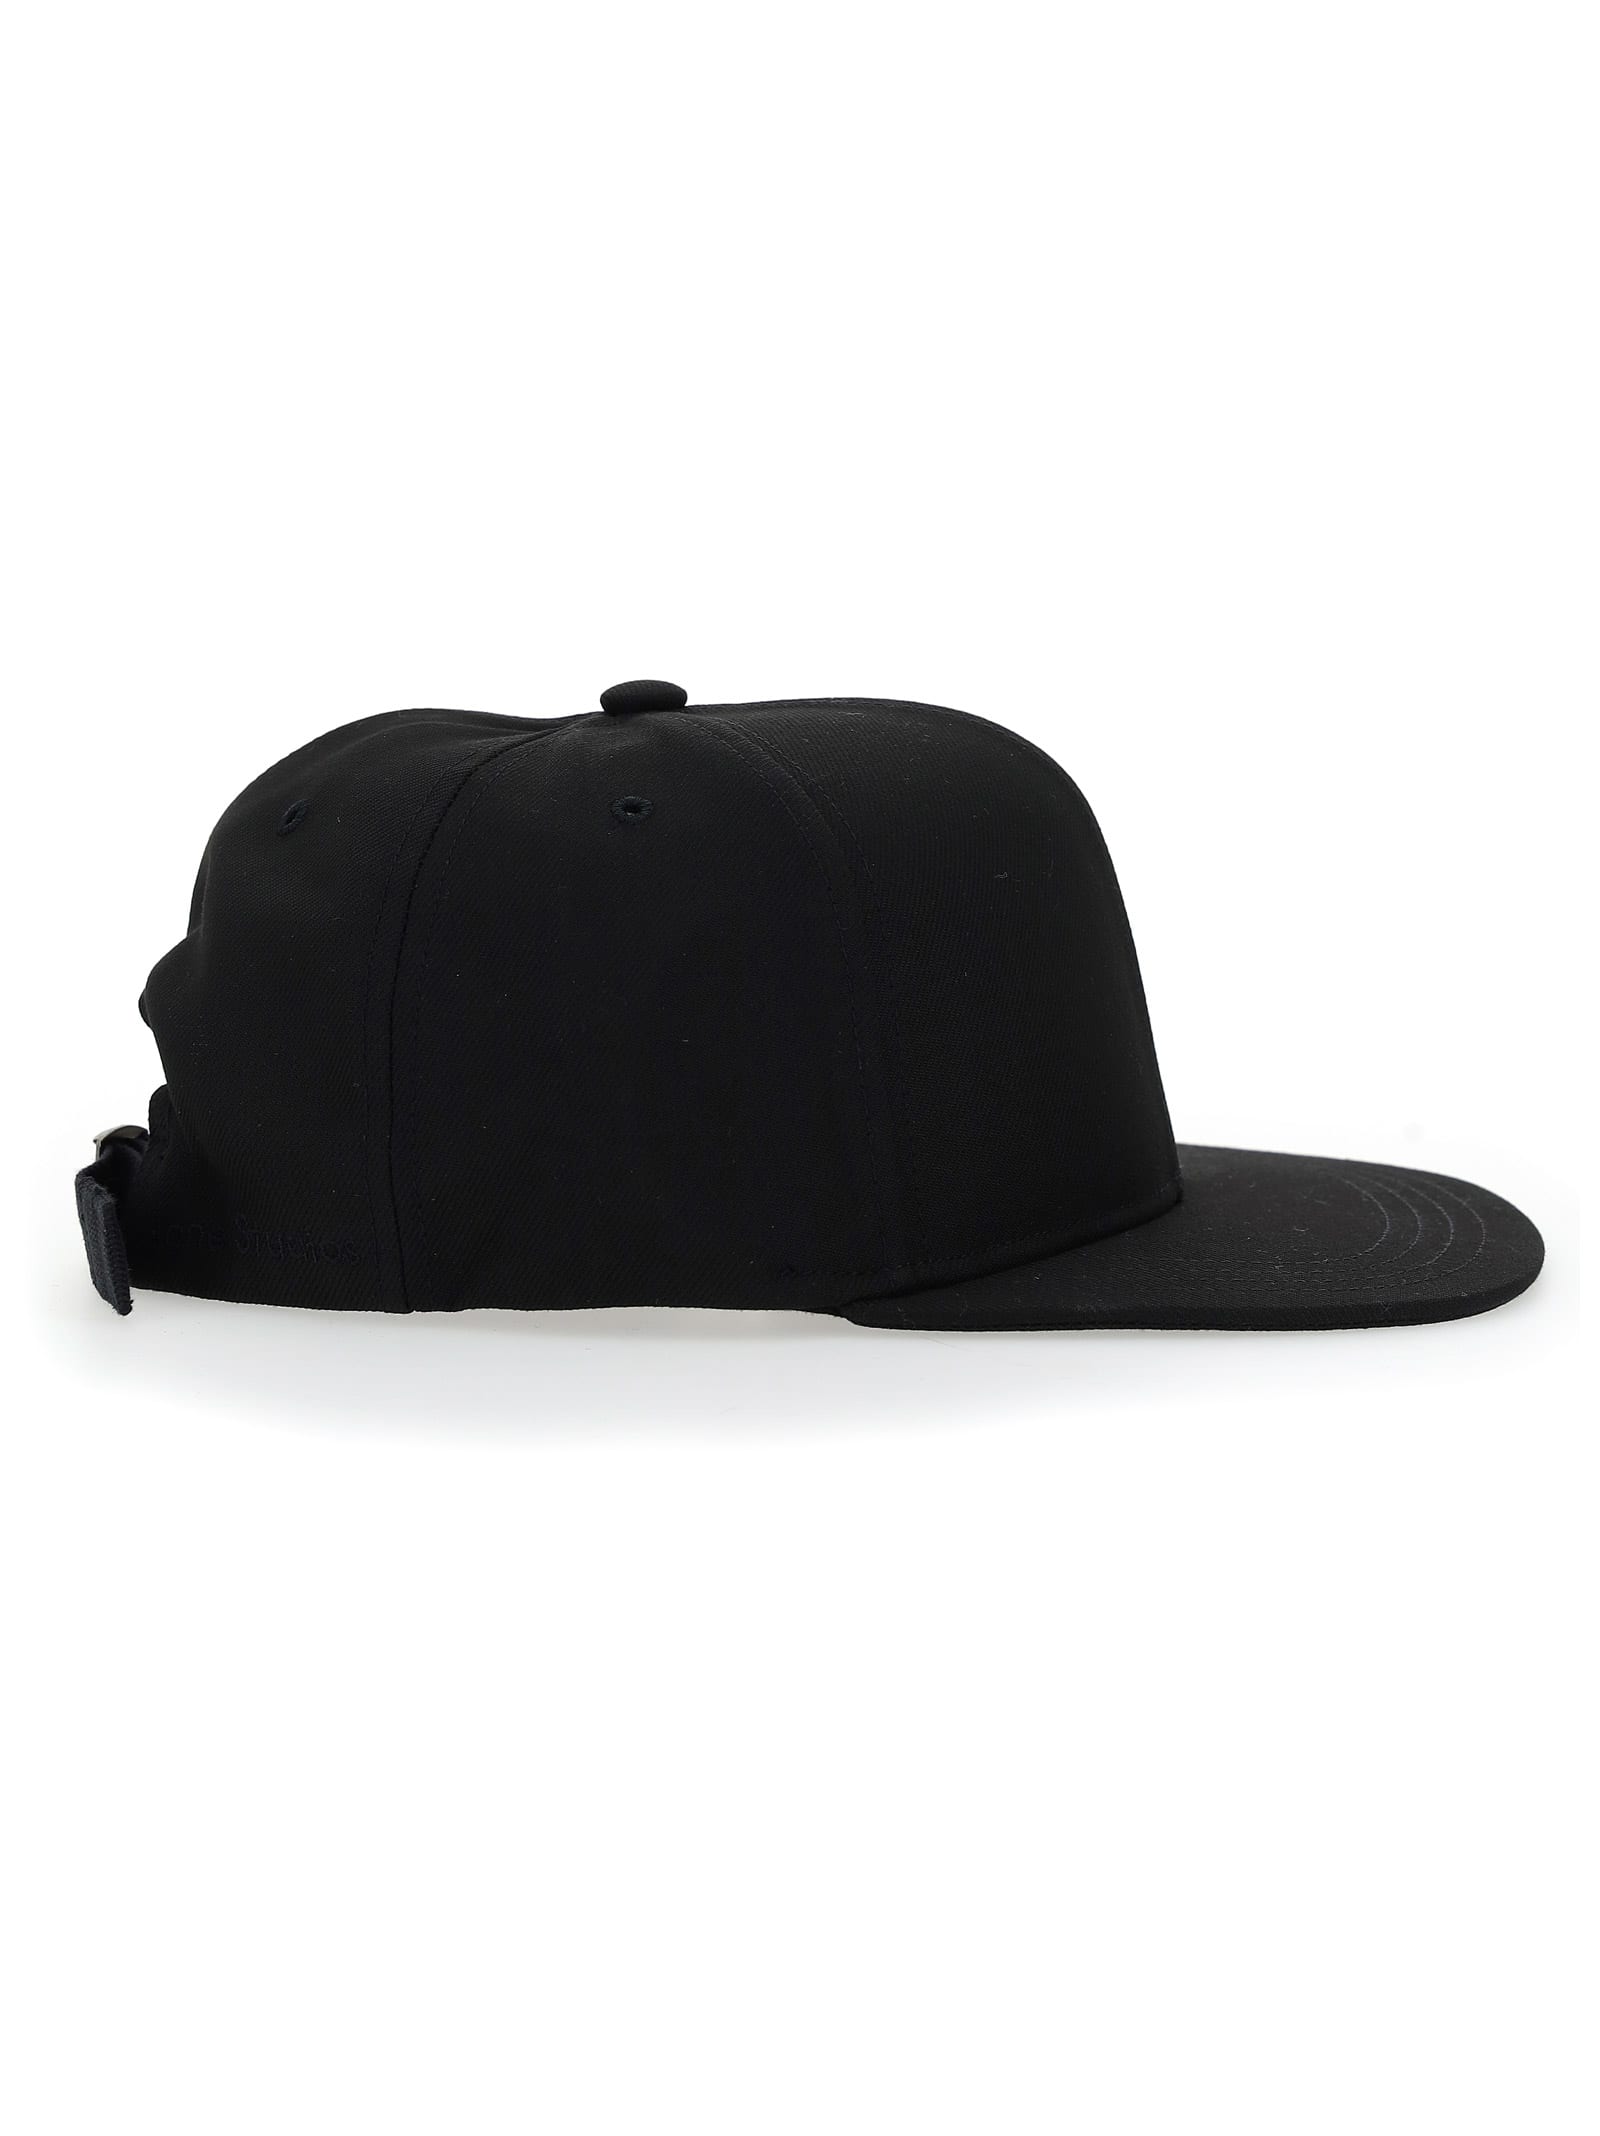 Off-white Bucket Hat In Black/white